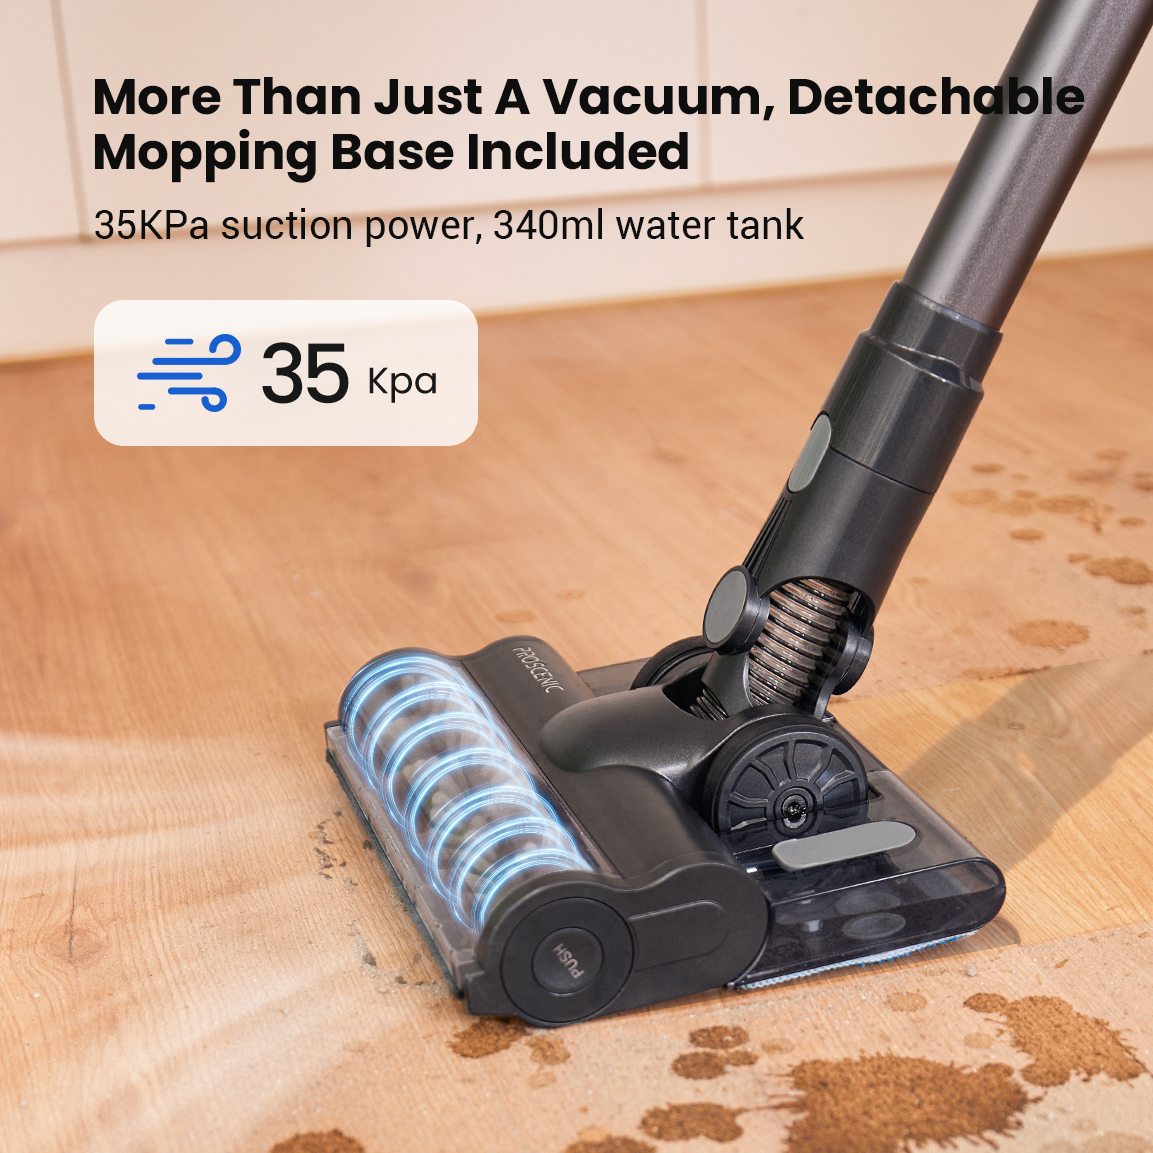 Proscenic P11 Cordless Stick Vacuum Cleaner, Hard Floor, Carpet 